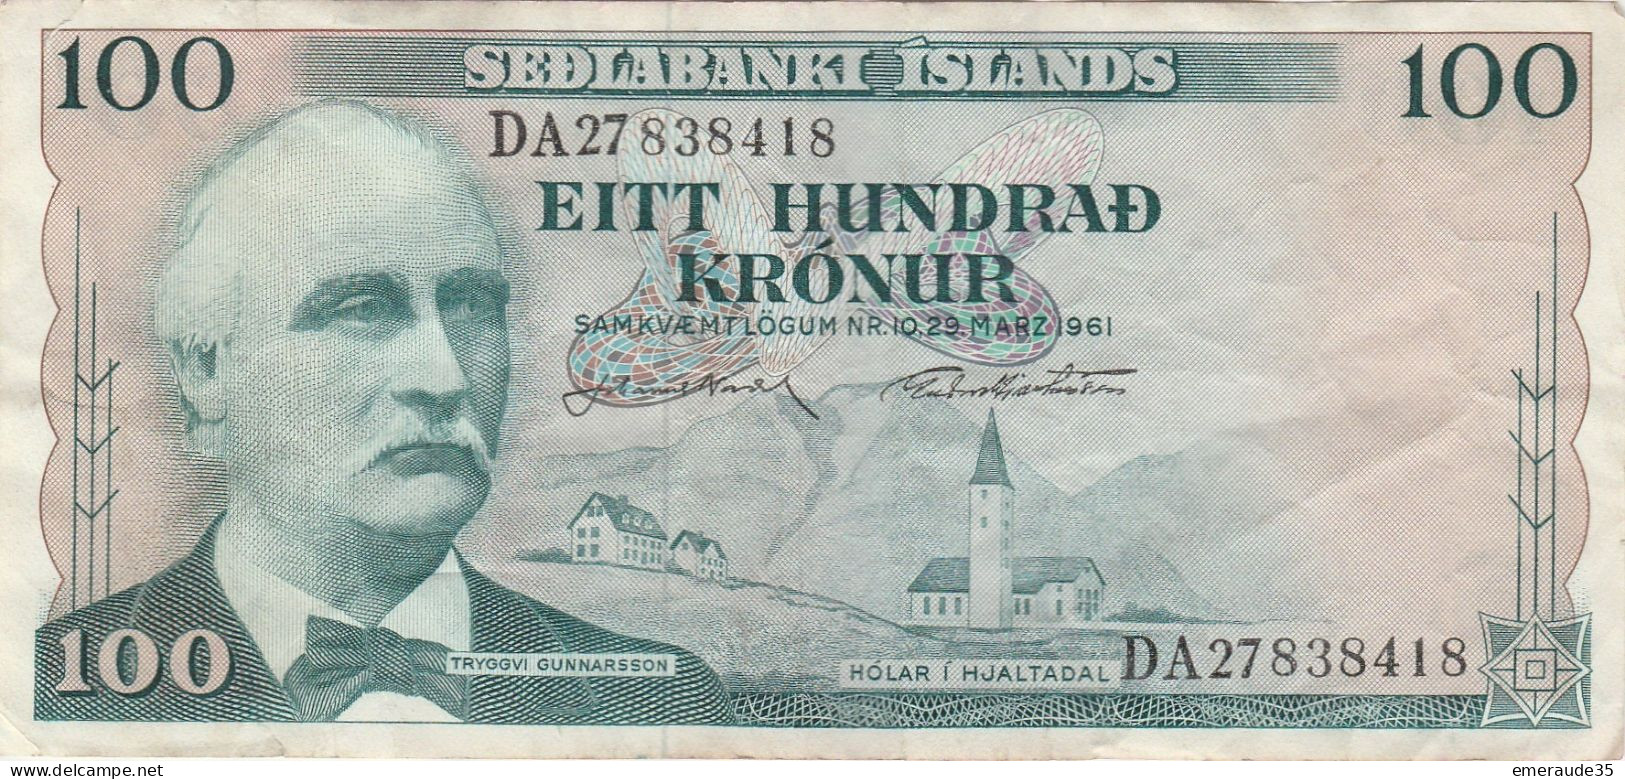 Billet 100 SEDLABANKI ISLANDS DA 27838418 1961 - Islande